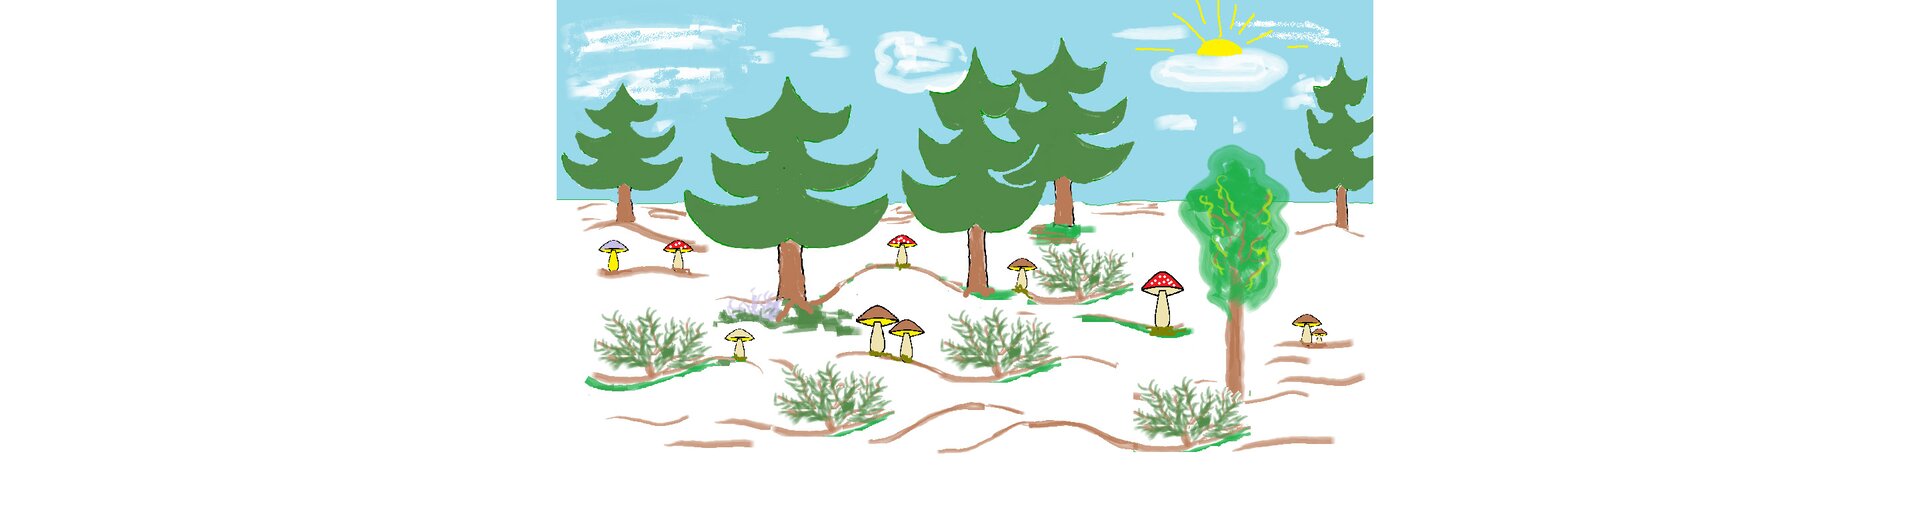 Ilustracja stworzona w programie graficznym przedstawiająca las z grzybami. Całość narysowana jest różnymi technikami, grzyby są narysowane za pomocą krzywych, drzewa za pomocą ołówka i wypełniania kolorem, a krajobraz i krzewy powstały przy użyciu różnych pędzli.